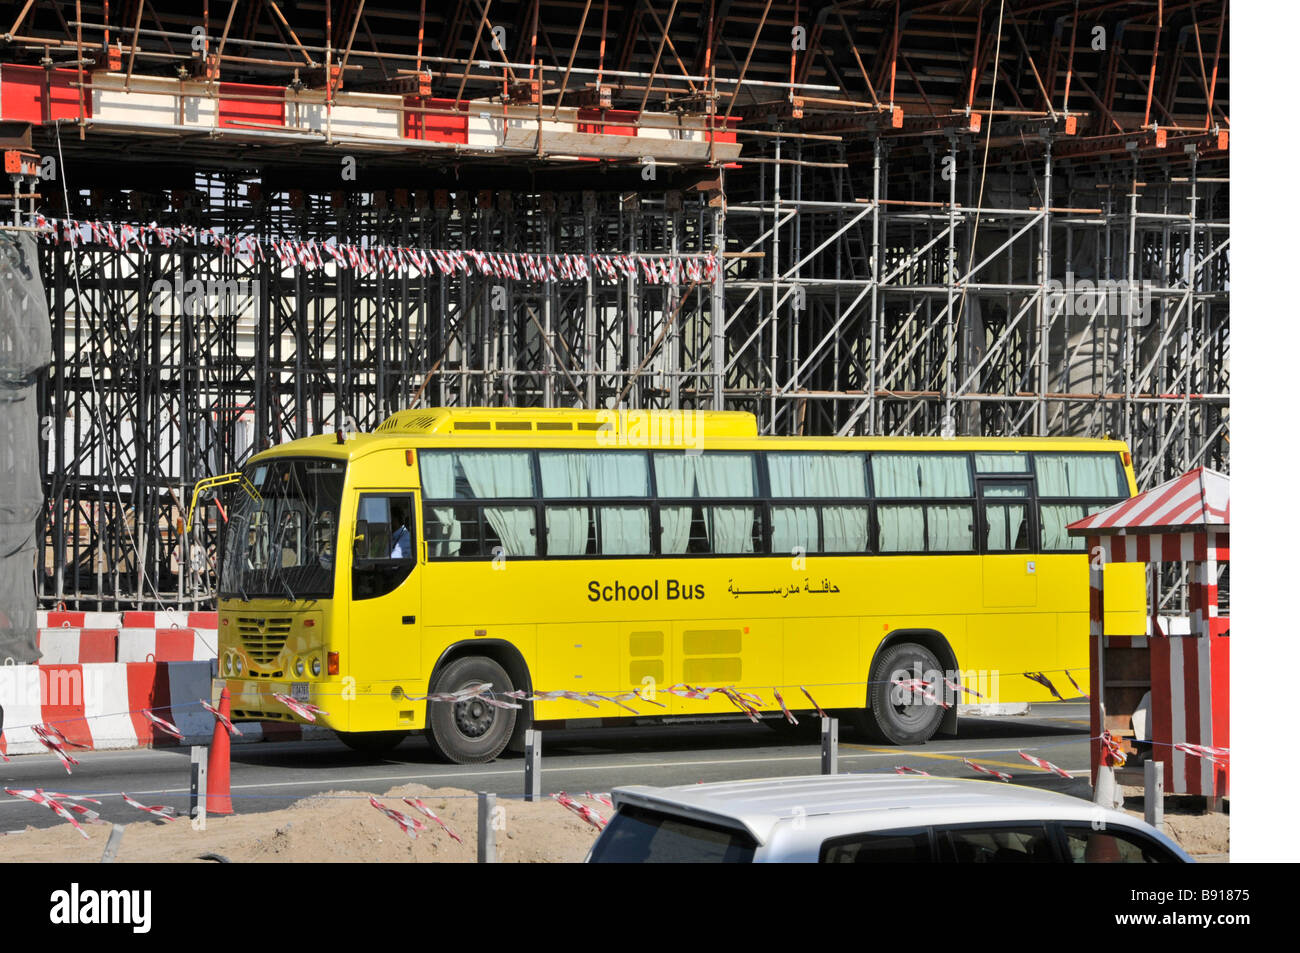 Dubai gelben Schulbus durch Gerüste rund um Brückenbau Projekt für neue Metro-Fahrleitung Vereinigte Arabische Emirate Stockfoto